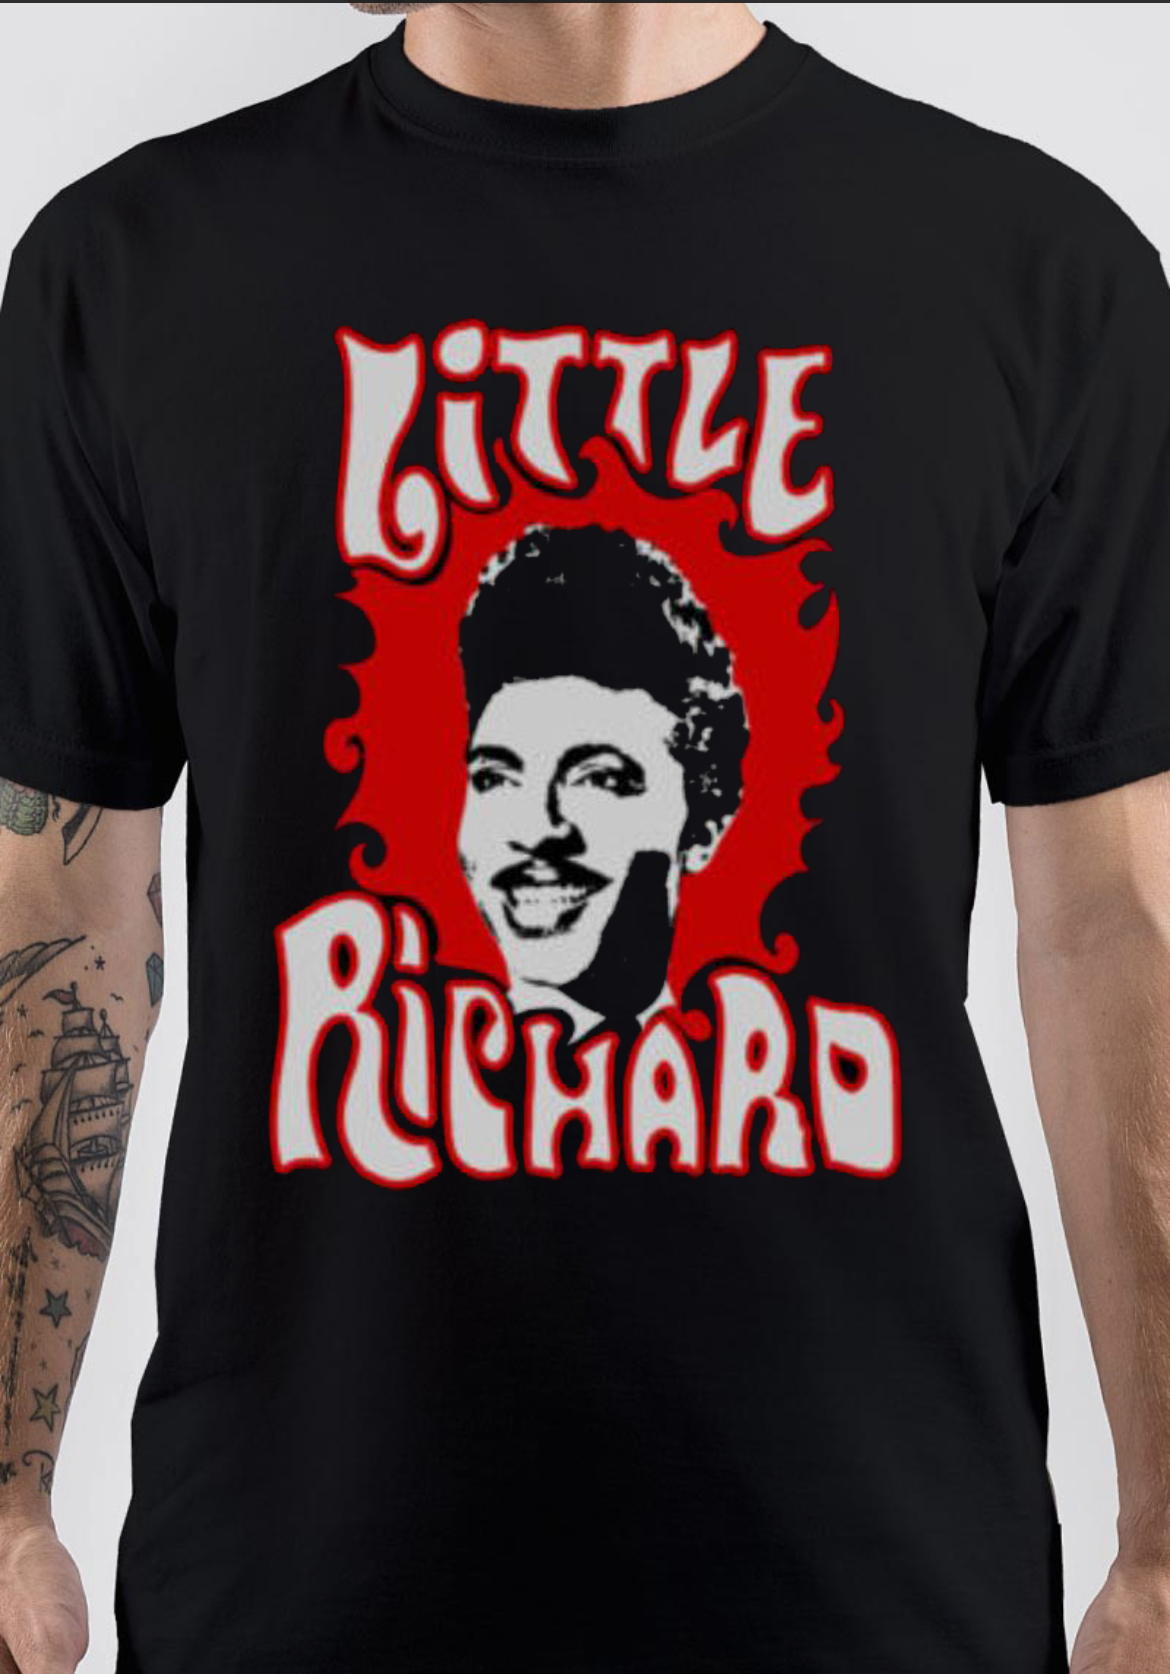 Little Richard T-Shirt And Merchandise